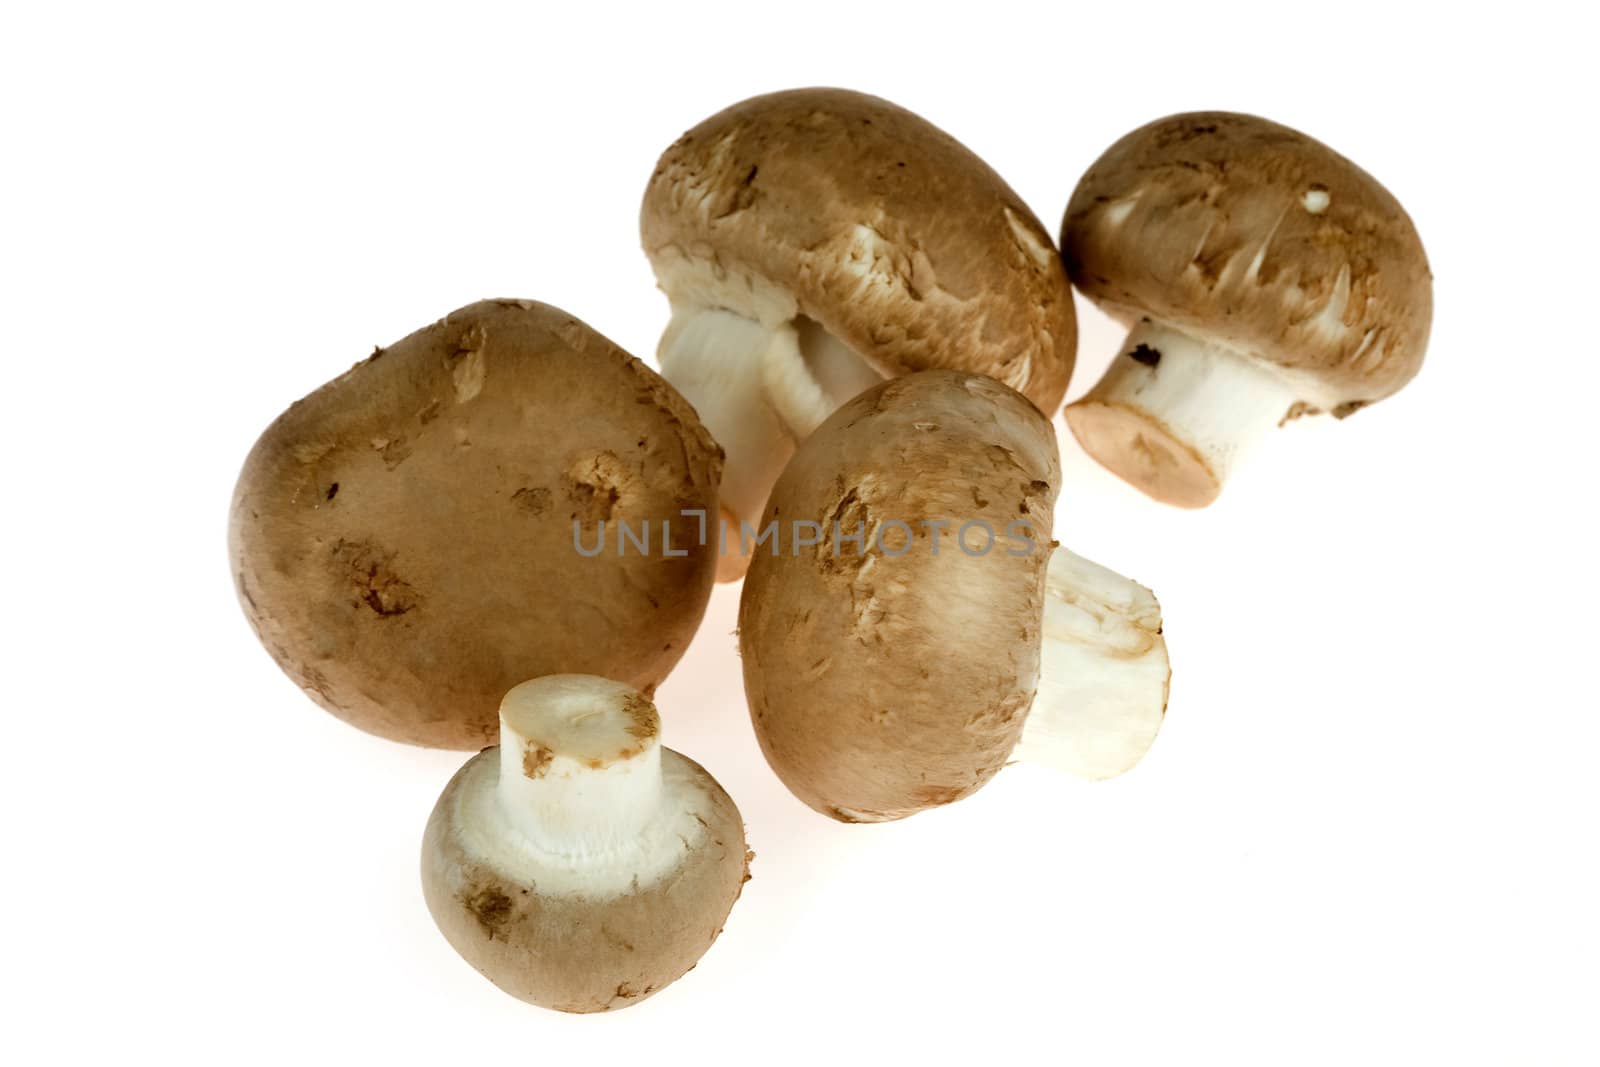 A lot of chestnut mushrooms